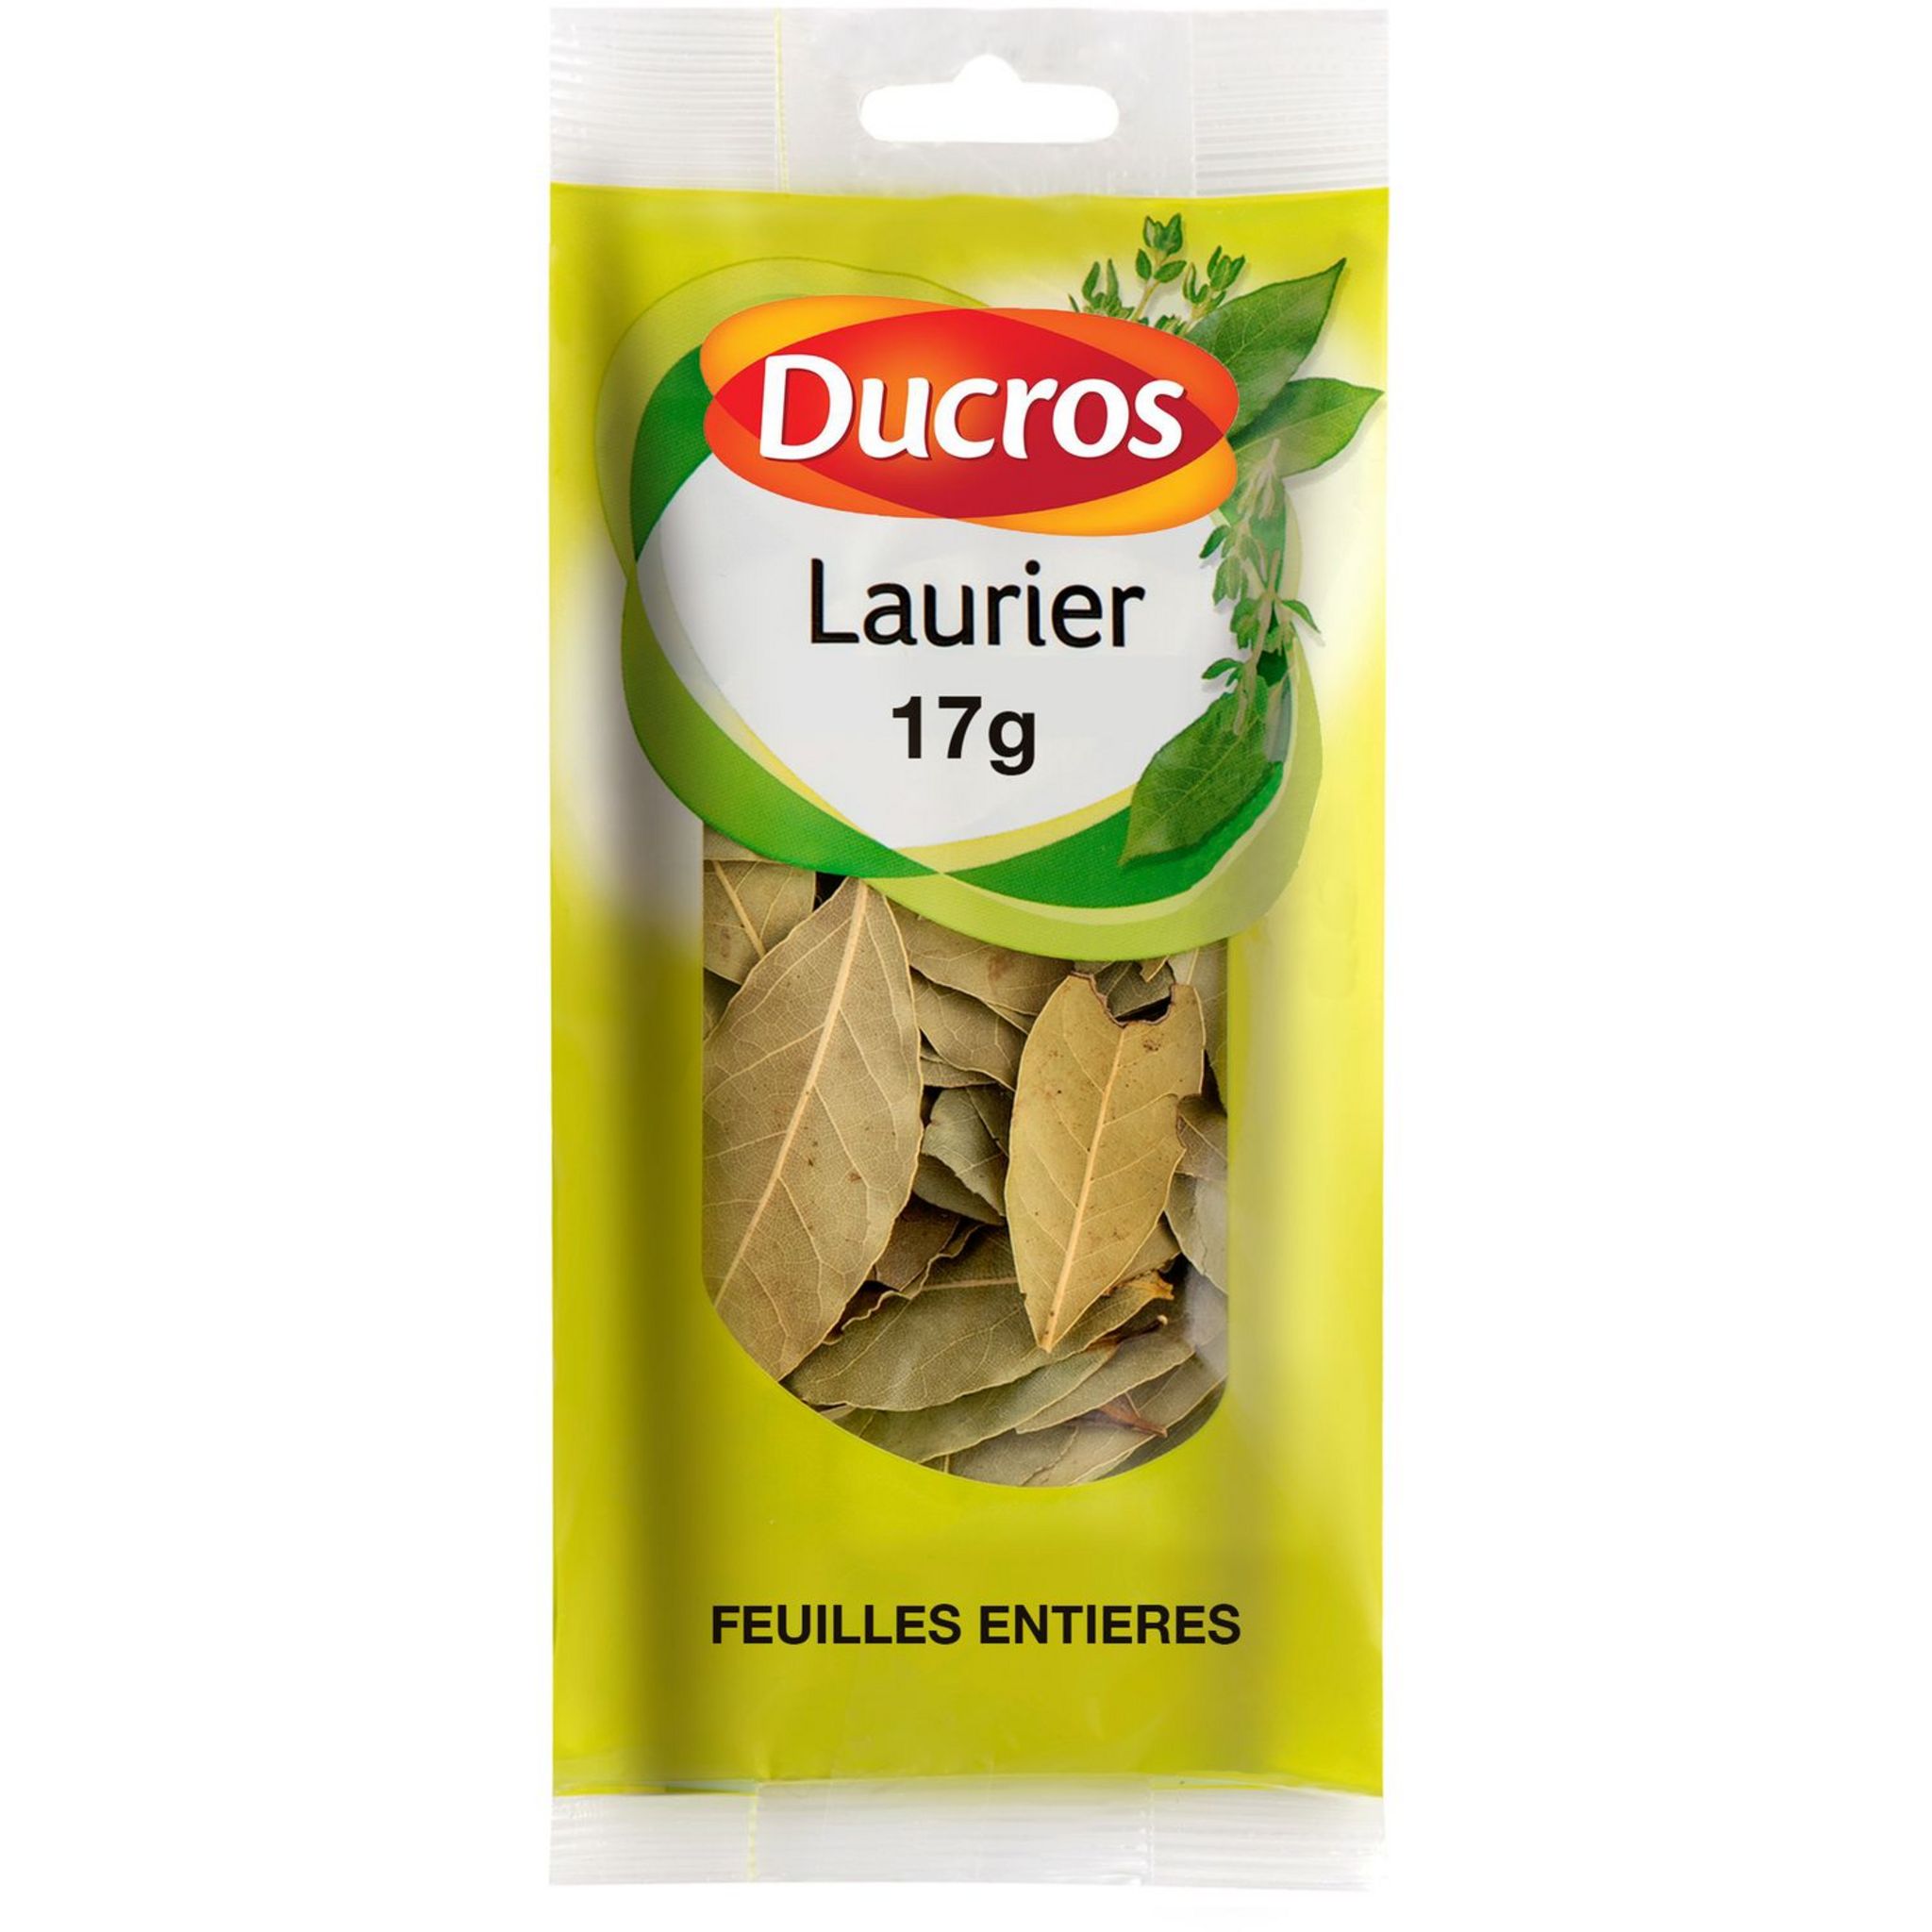 DUCROS Laurier en feuilles entières 17g pas cher 